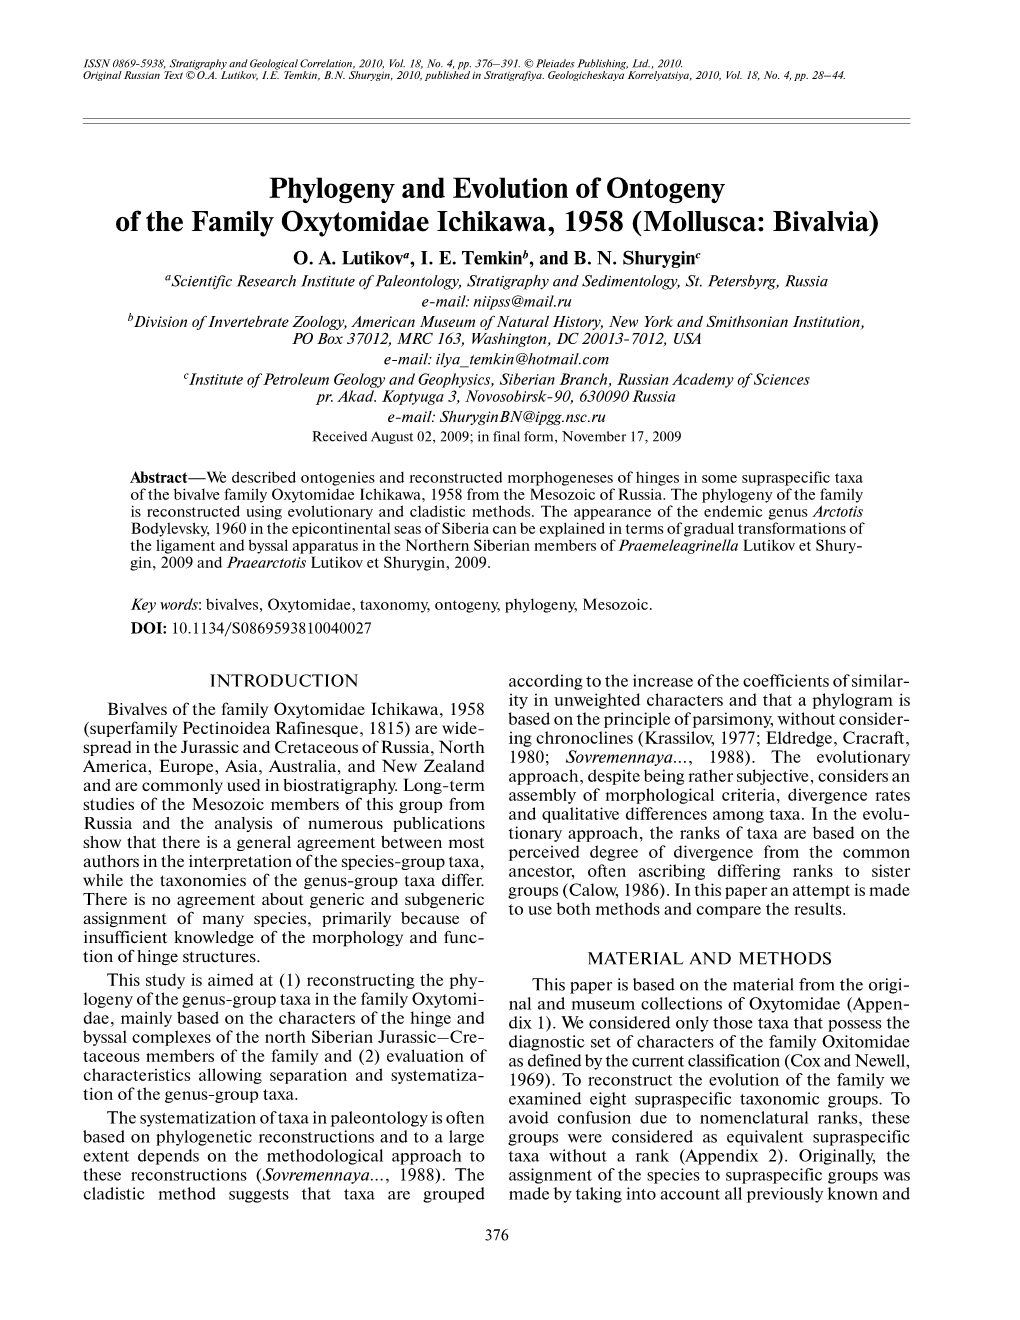 Phylogeny and Evolution of Ontogeny of the Family Oxytomidae Ichikawa, 1958 (Mollusca: Bivalvia) O